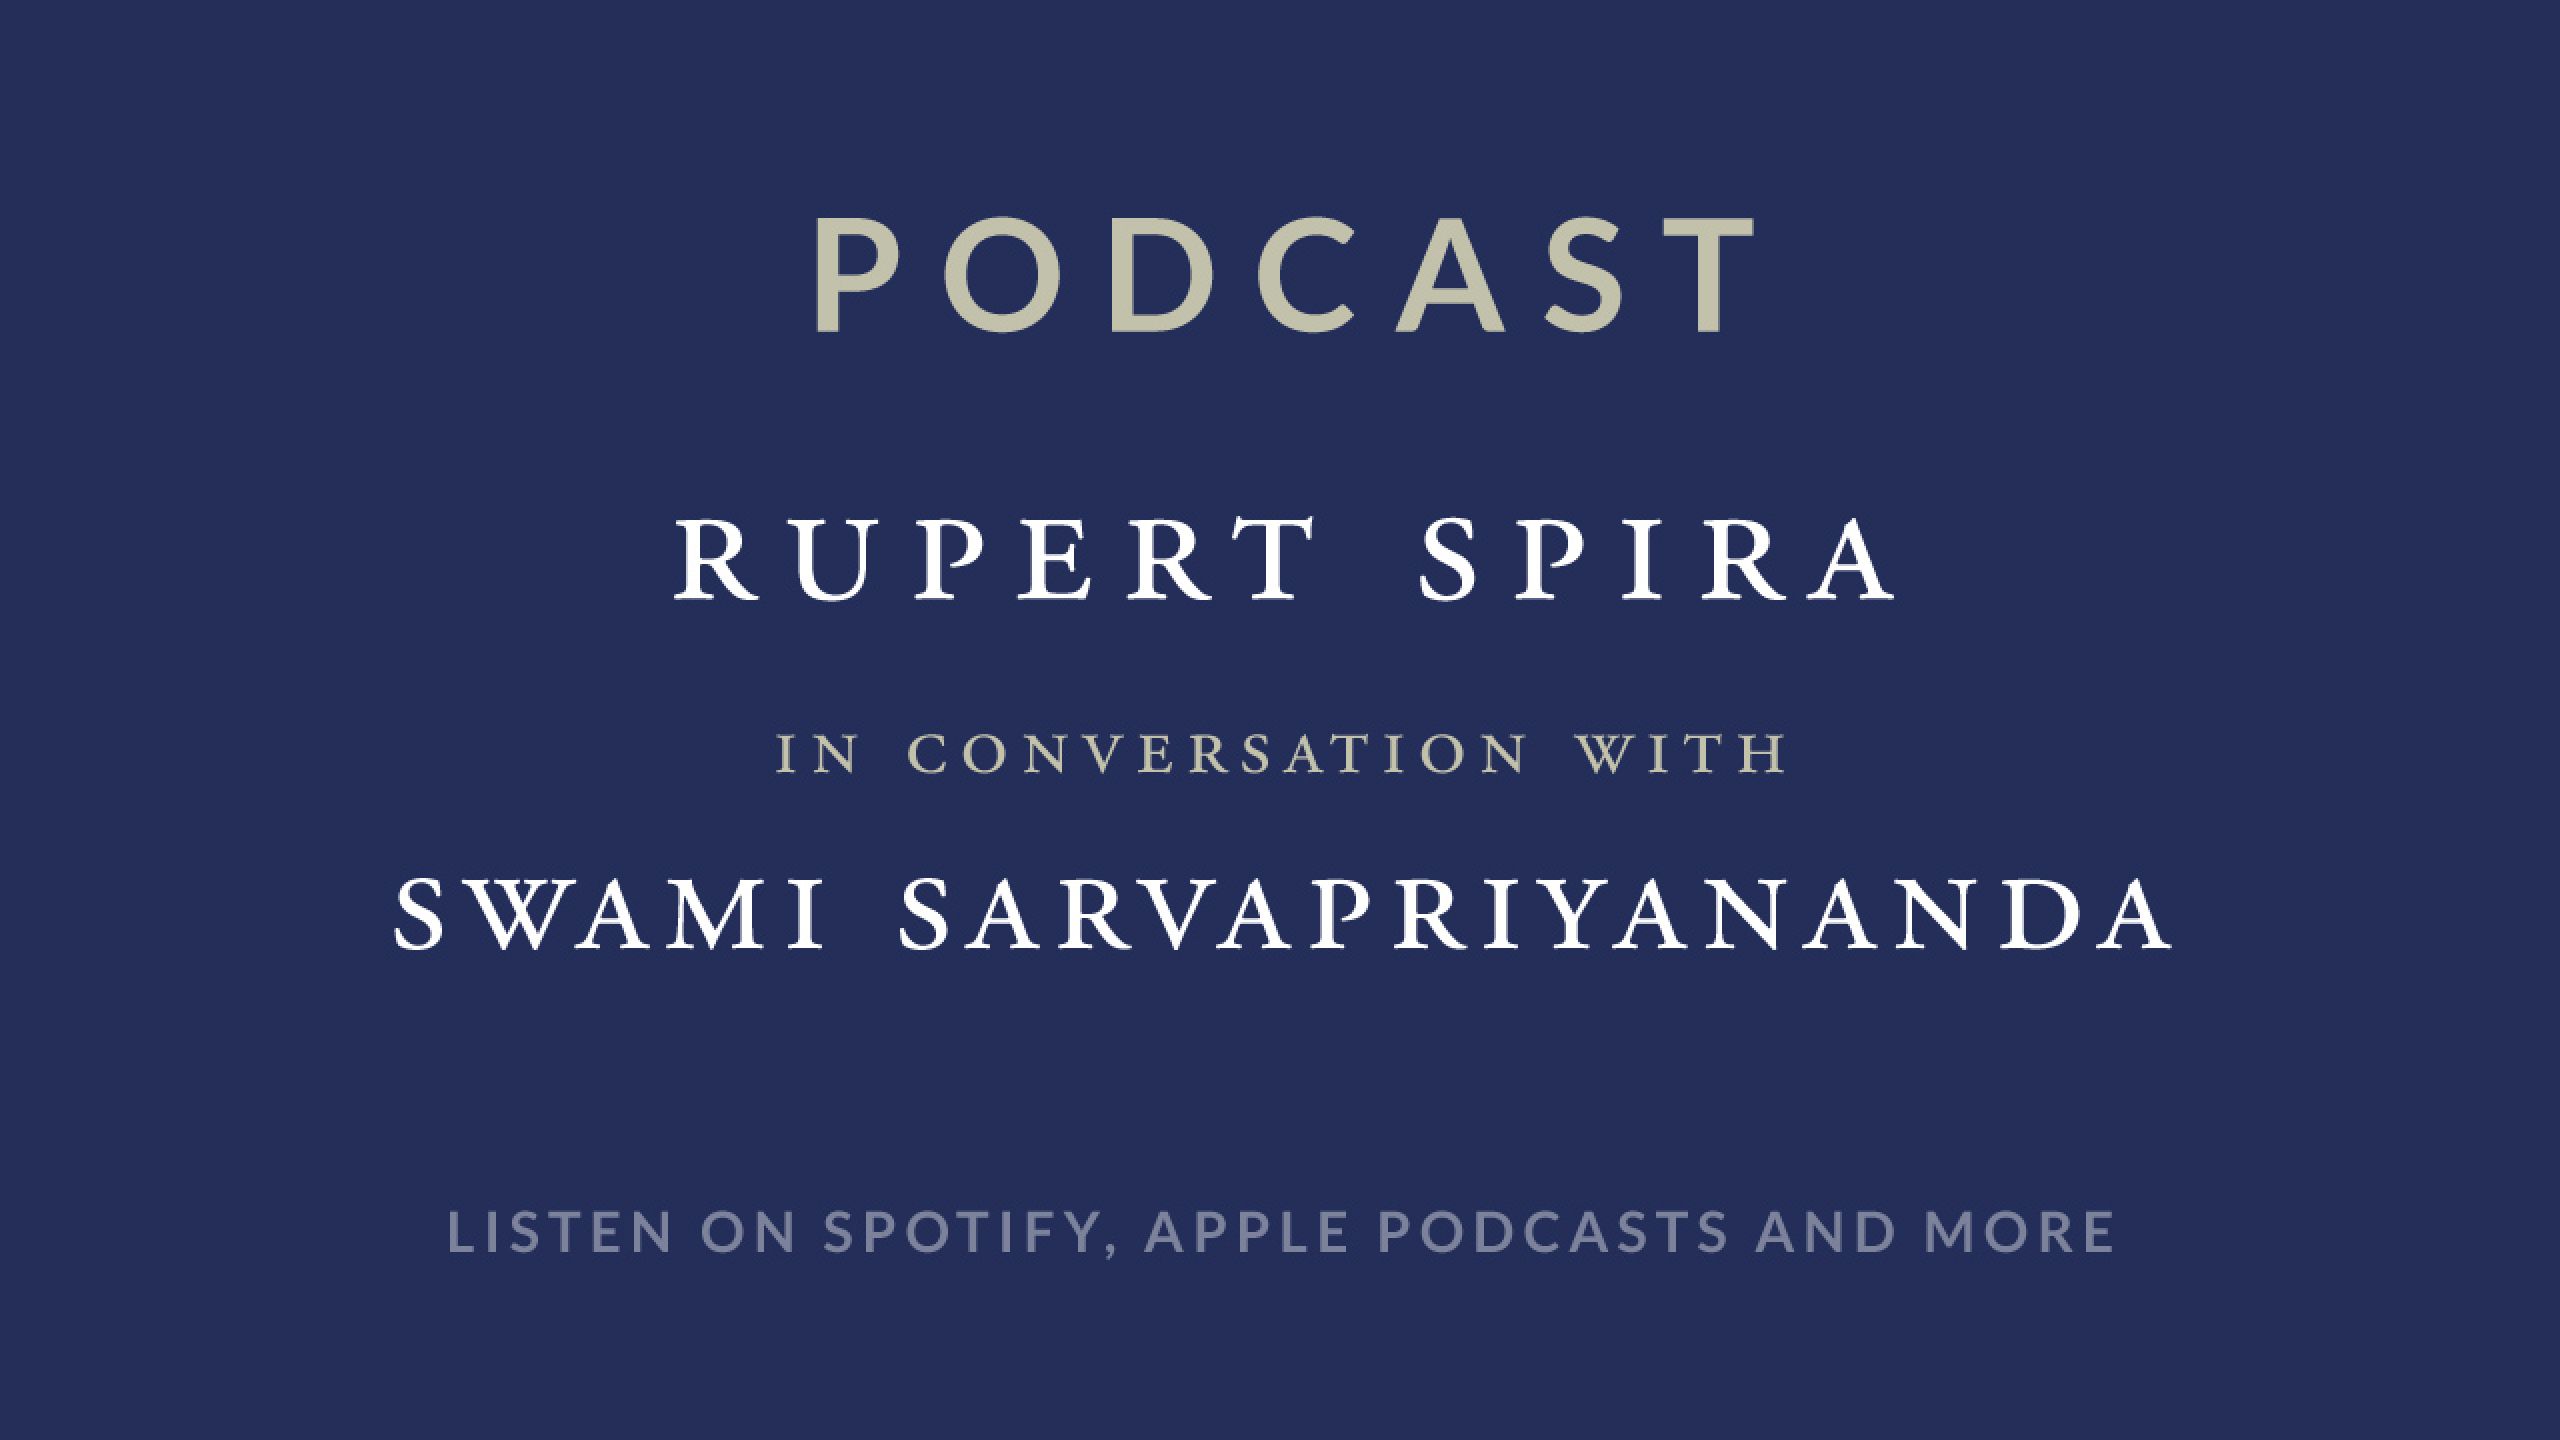 Rupert Spira Podcast: Swami Sarvapriyananda